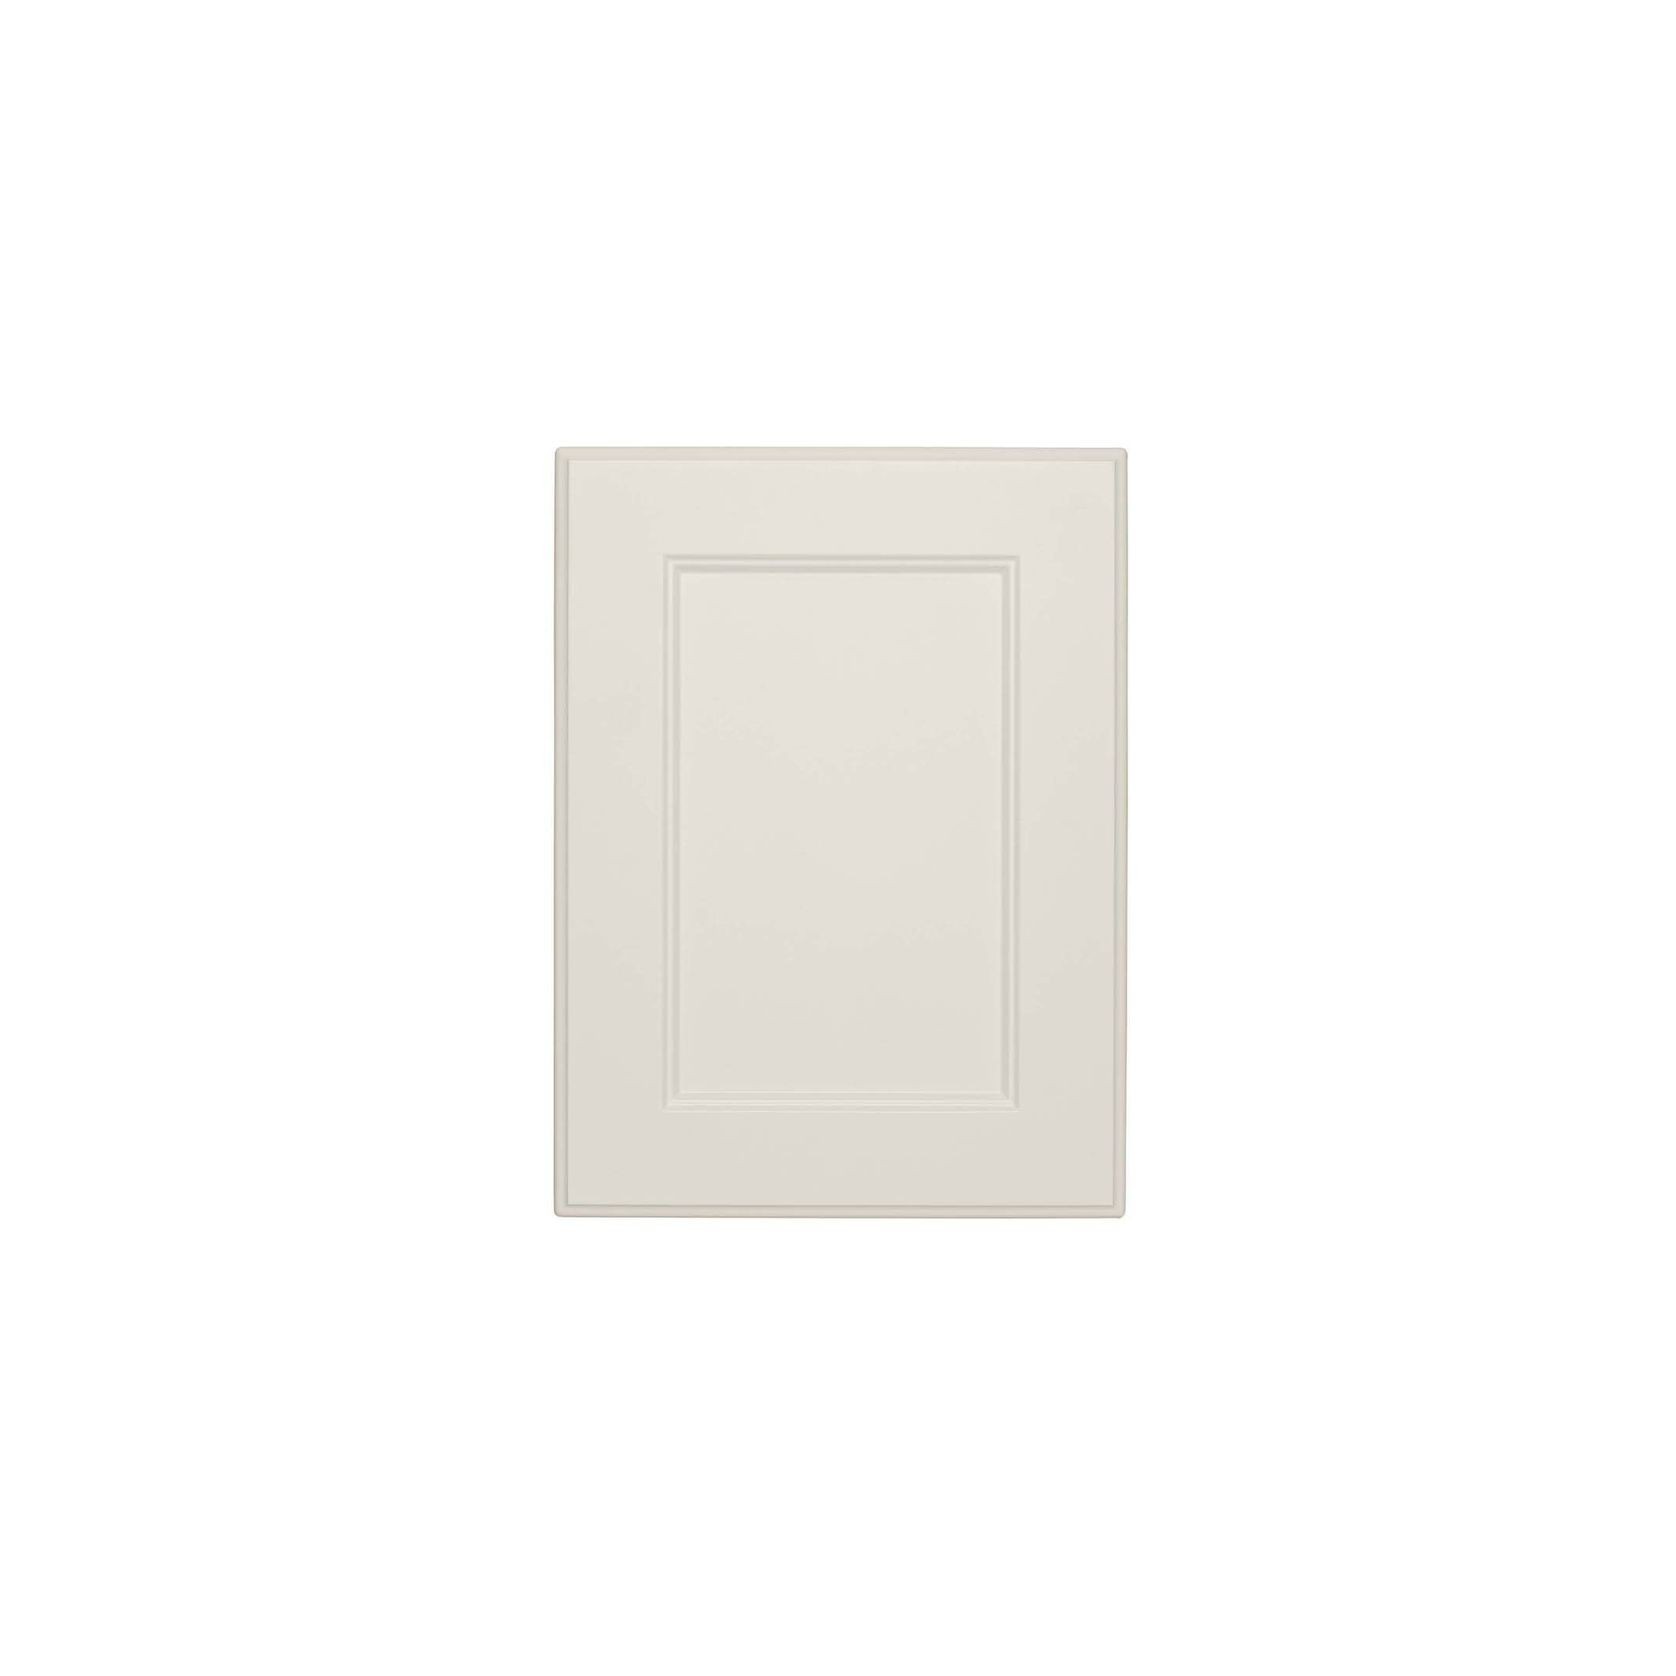 Durostyle Platinum Series - Preston Kitchen Cabinet Doors gallery detail image